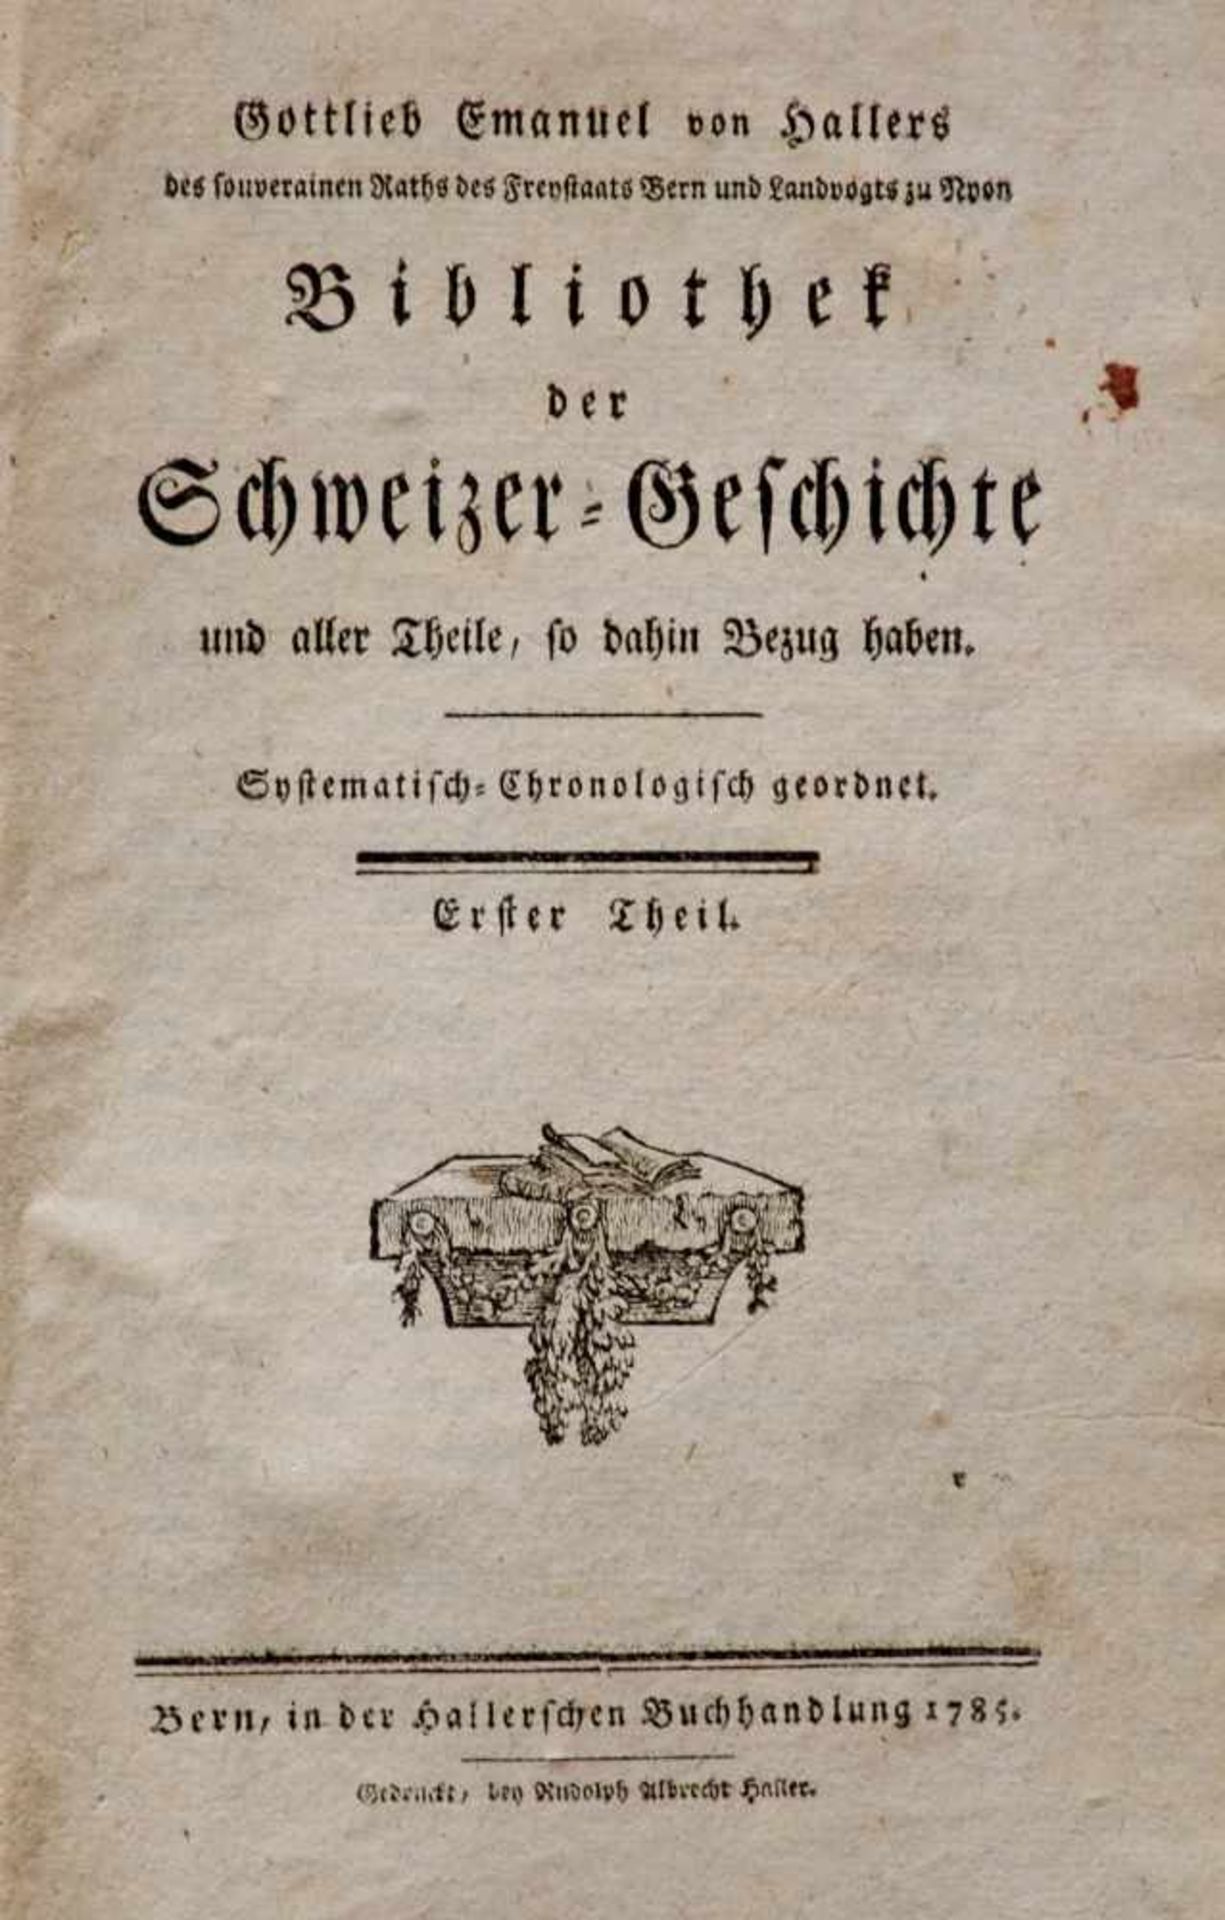 Schweiz - Haller, G. E. von,Bibliothek der Schweizer-Geschichte. 6 Bde. und Register. Bern, - Bild 2 aus 2